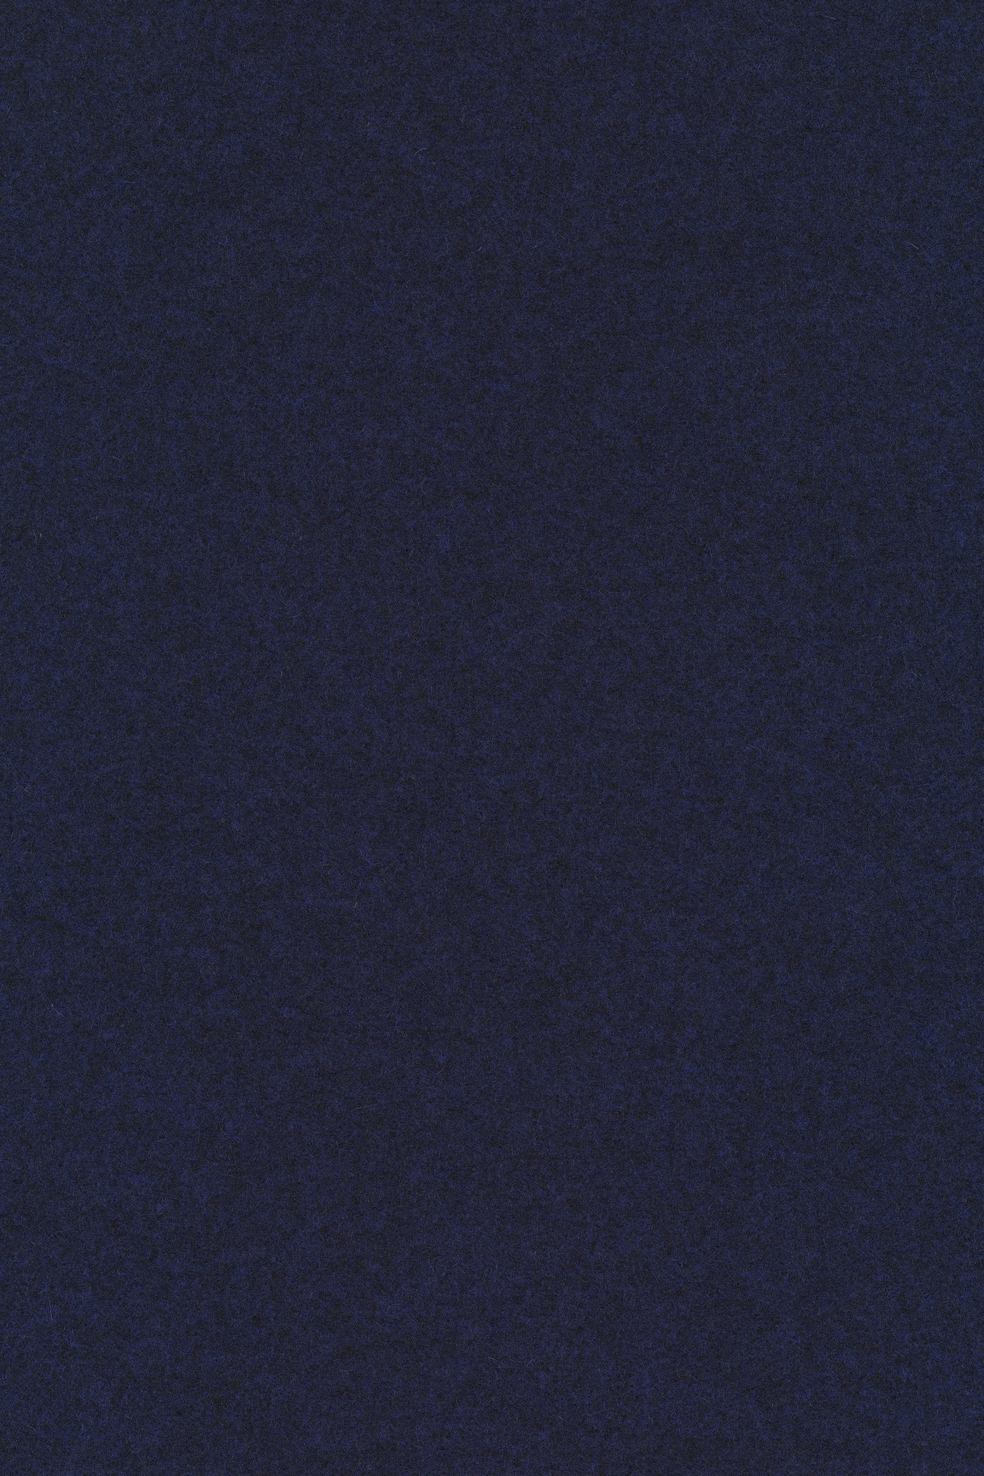 Fabric sample Divina Melange 3 787 blue